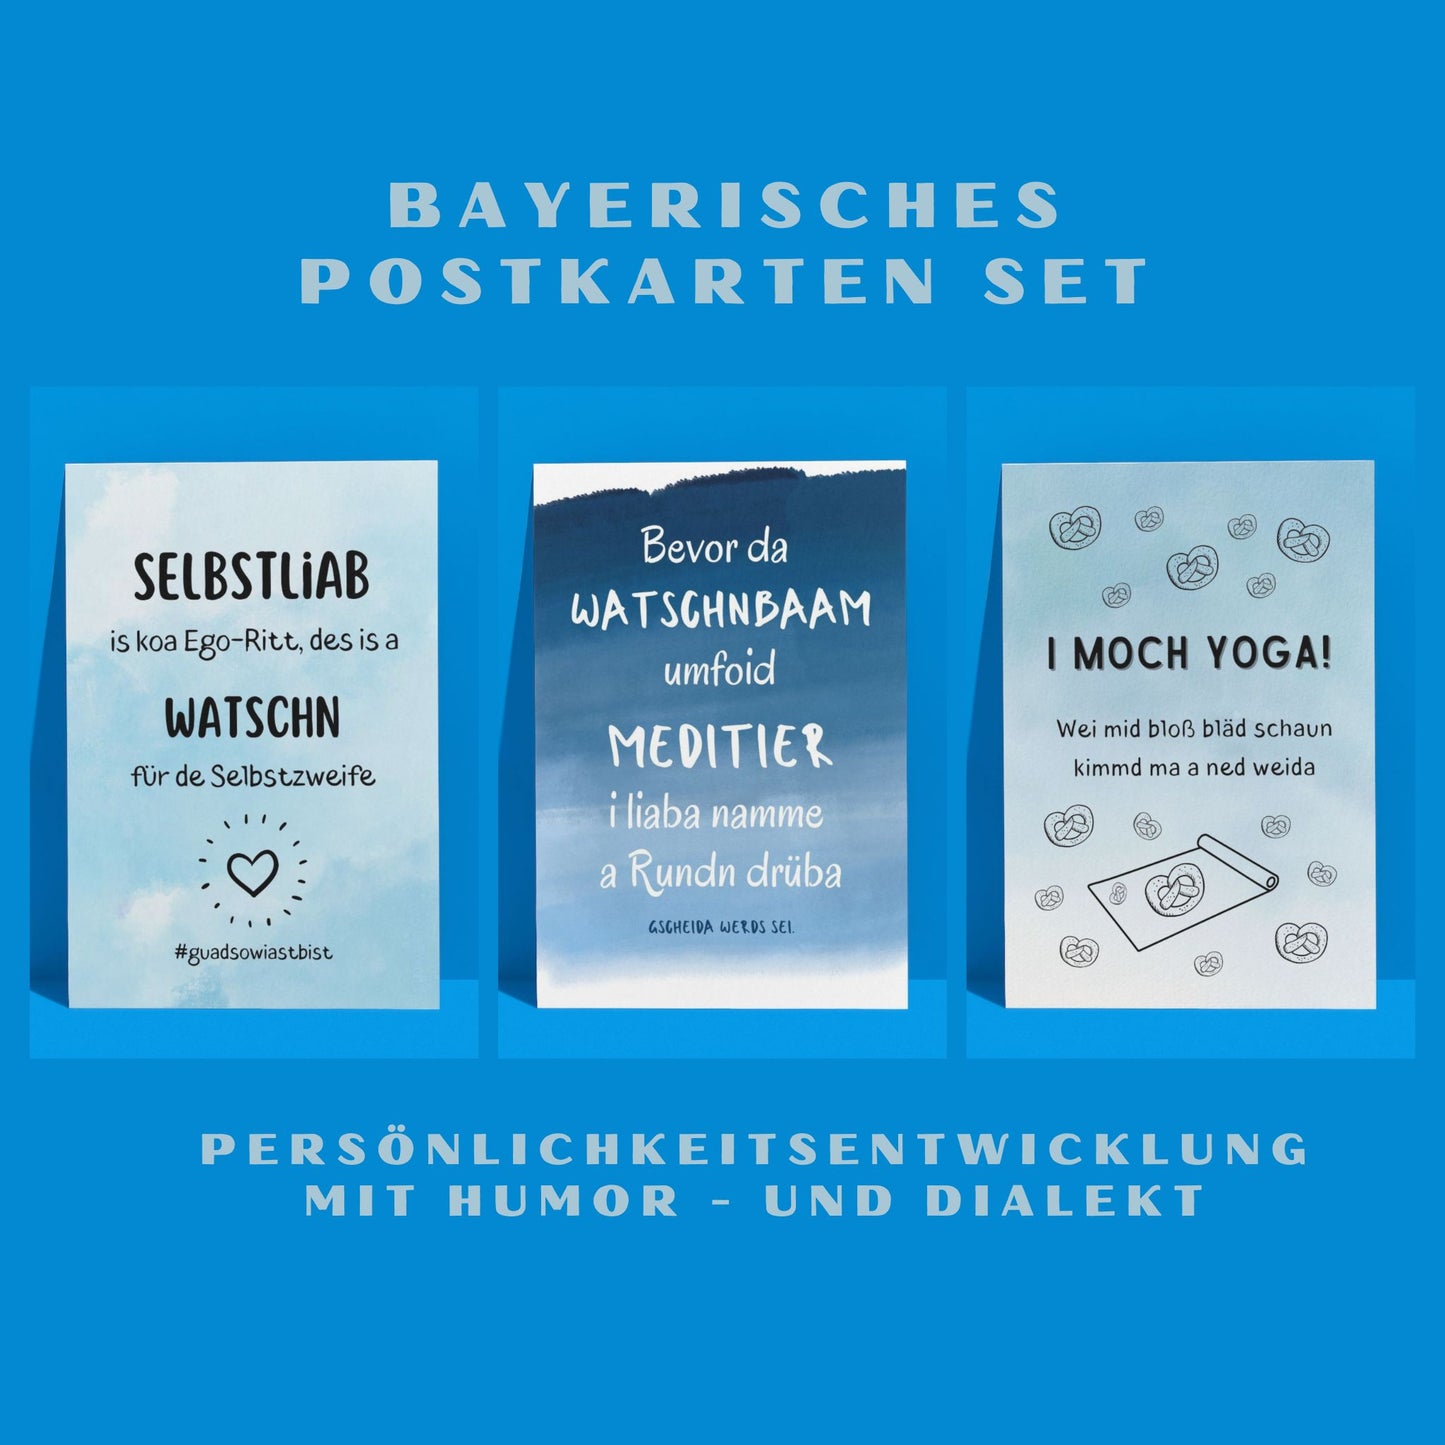 Bayerisches Postkarten Set - 3x Postkarte mit bayrischen Sprüchen - Das humorvolle Trio, coole Postkarte Spruch Lustig